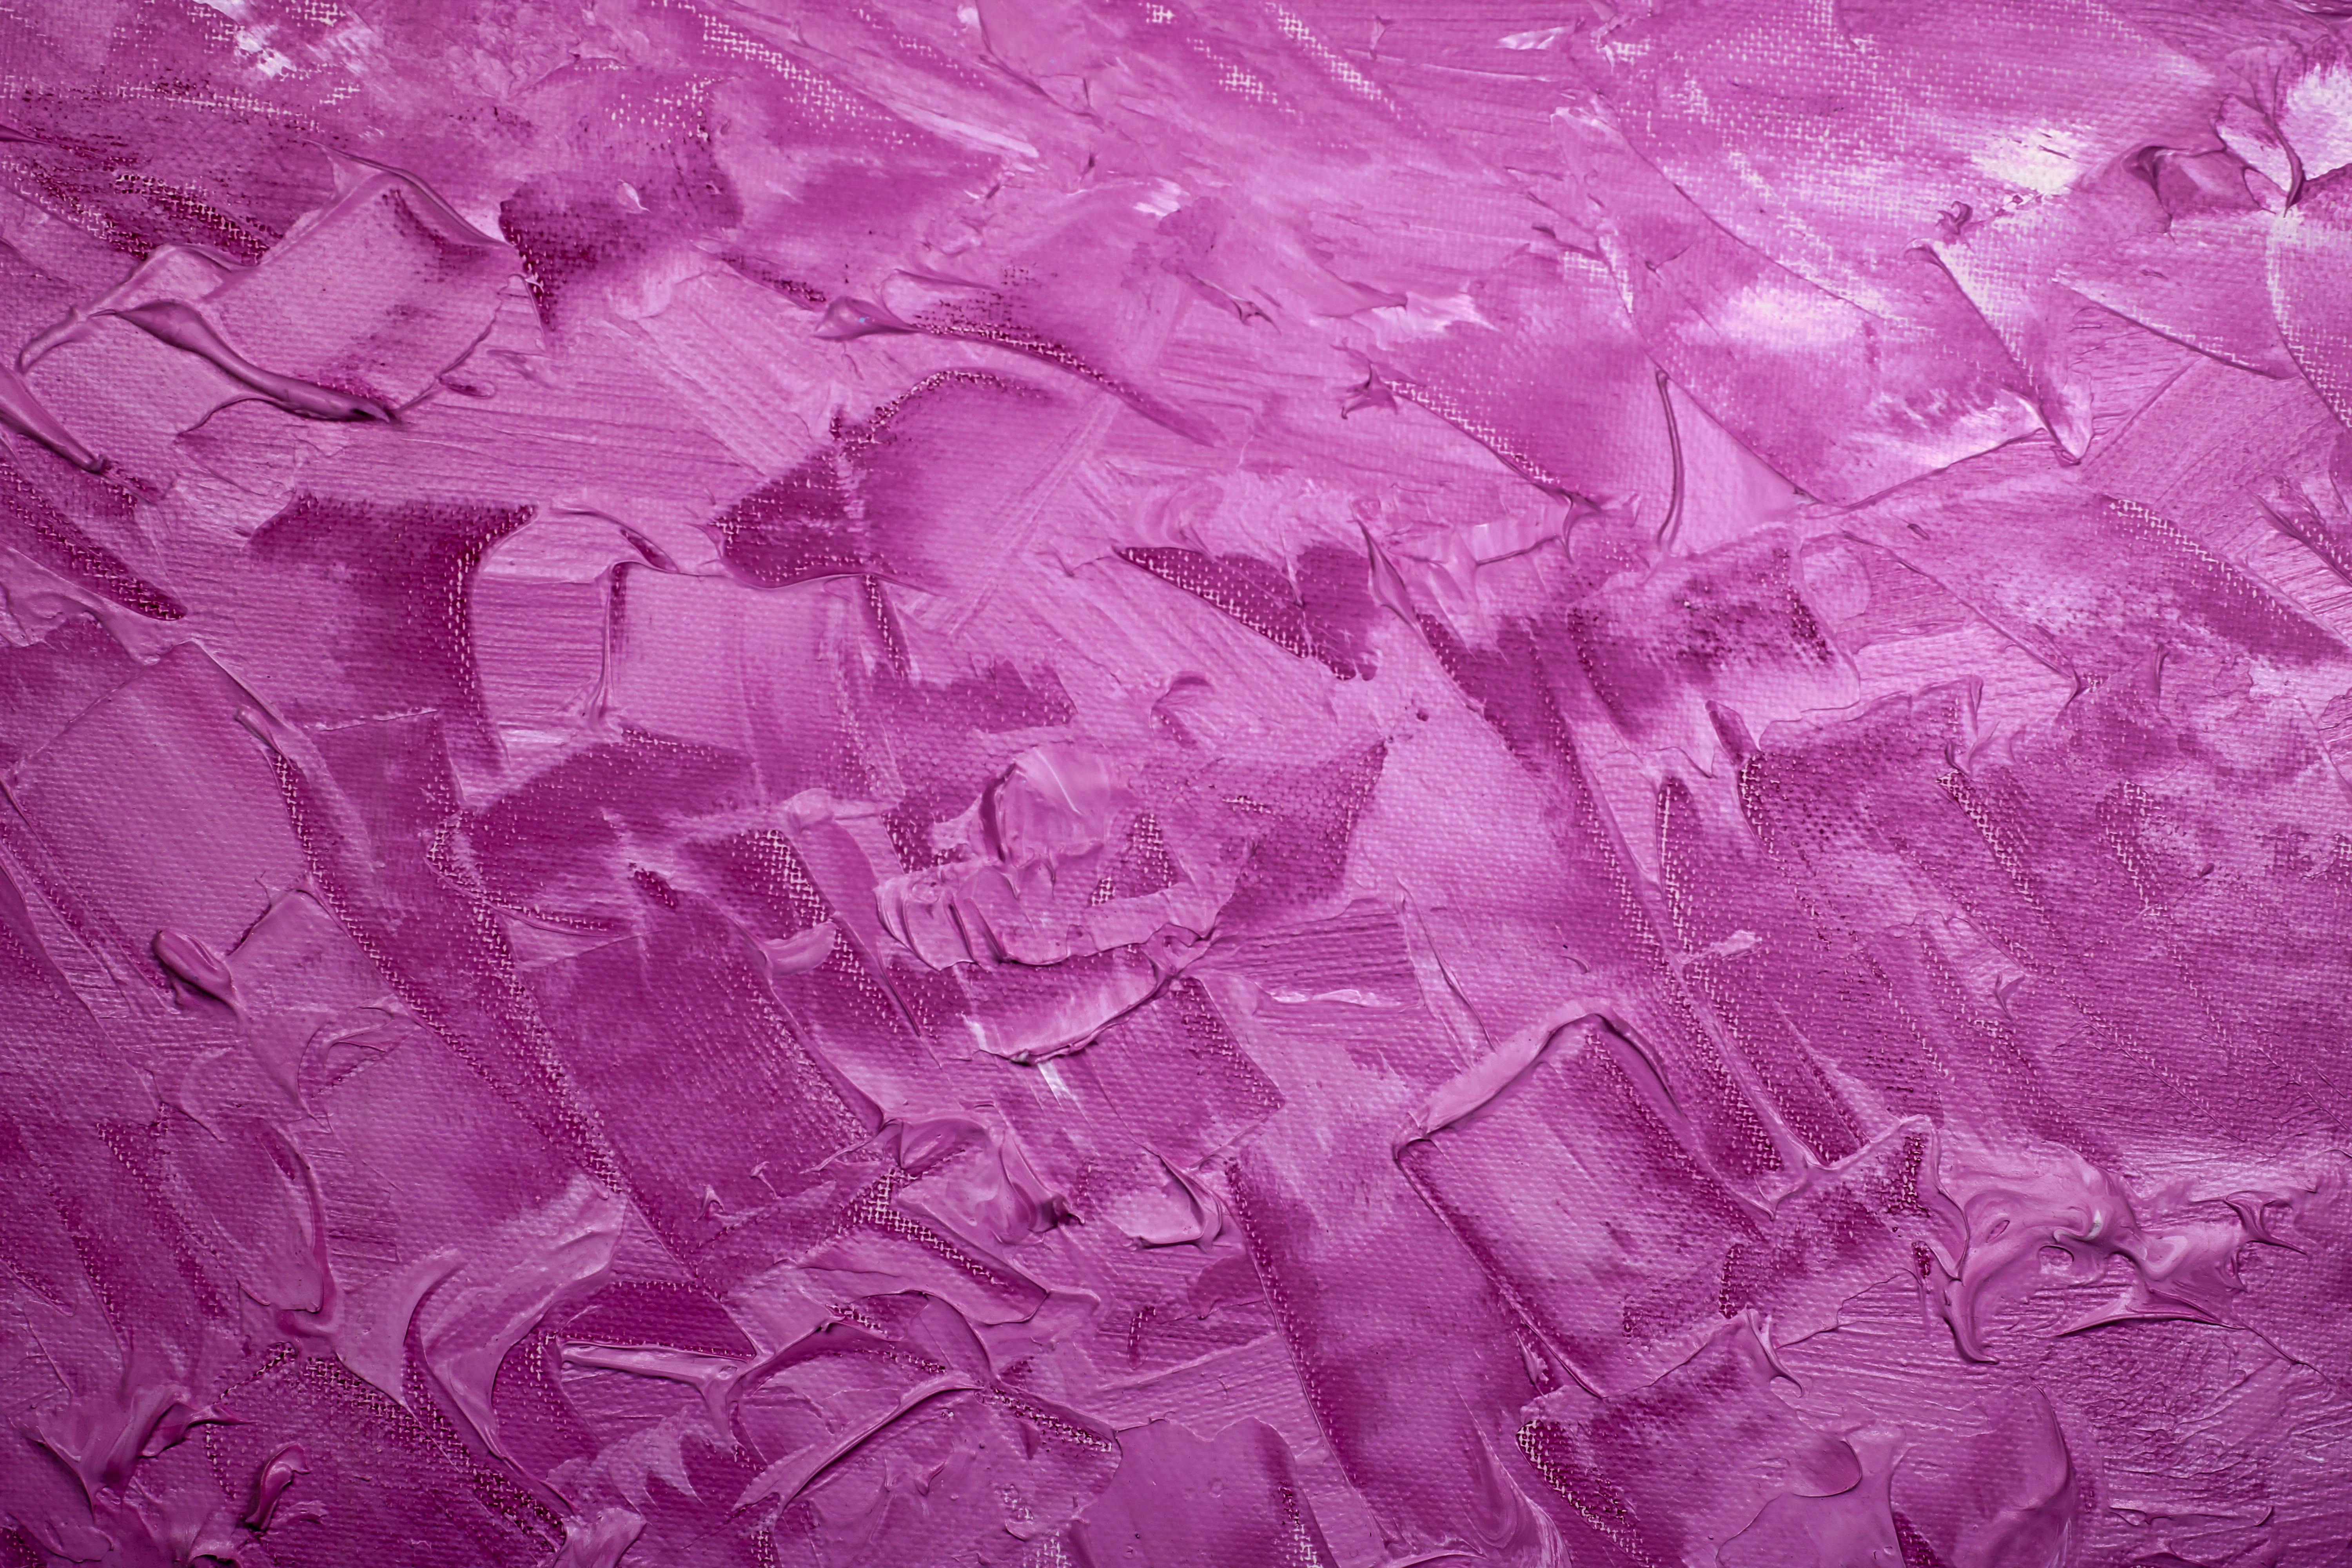 Free Light Purple Aesthetic Wallpaper - Download in JPG